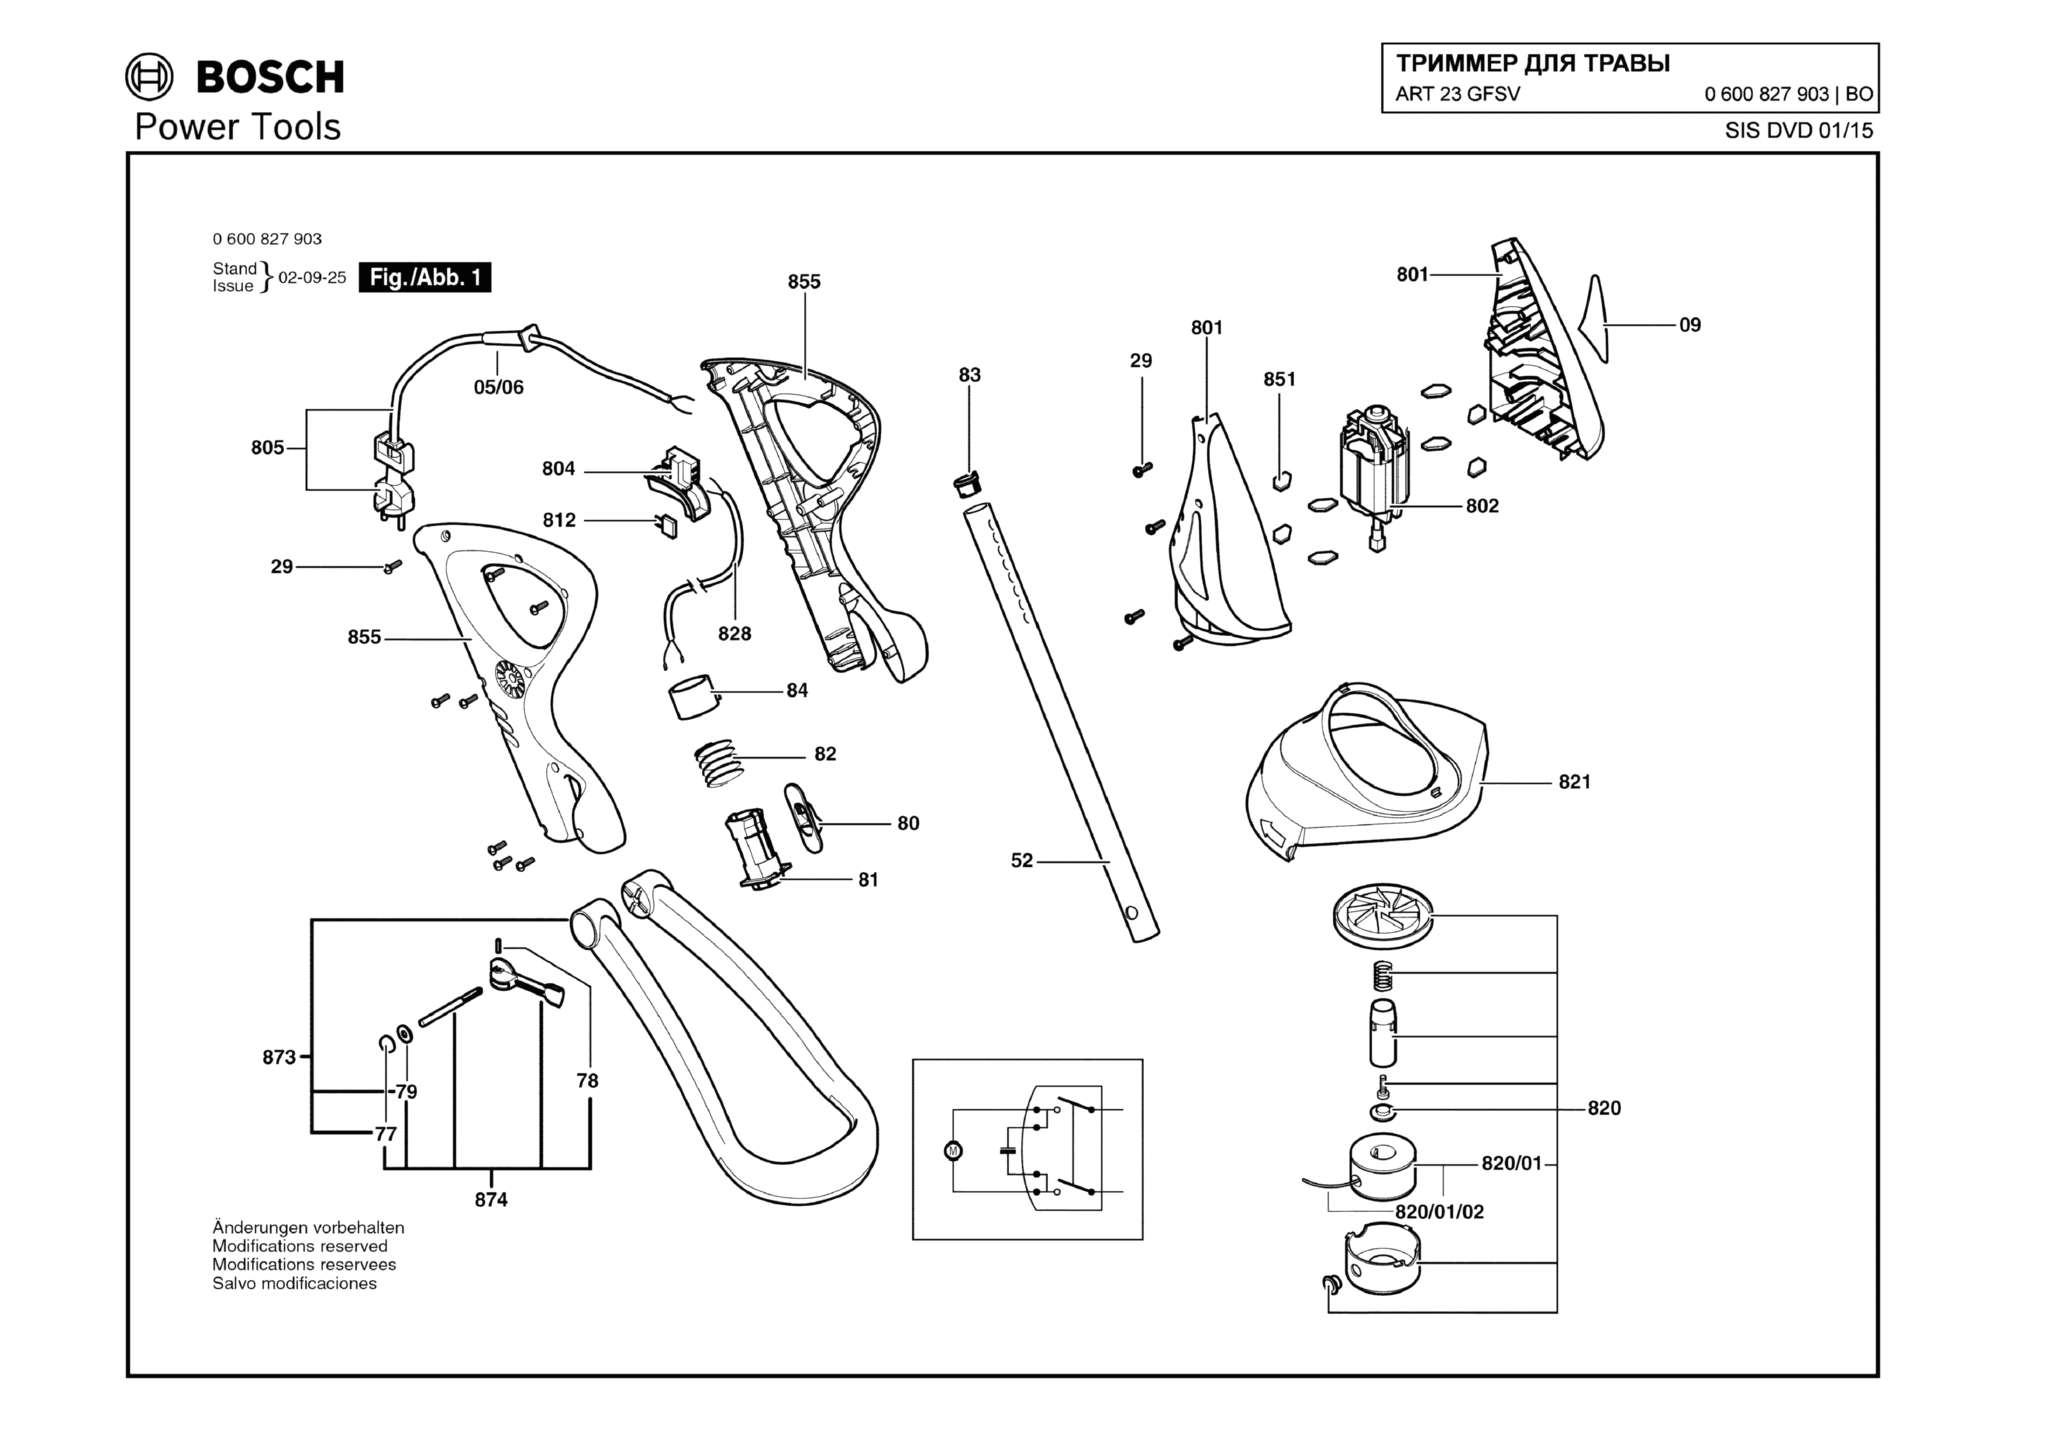 Запчасти, схема и деталировка Bosch ART 23 GFSV (ТИП 0600827903)